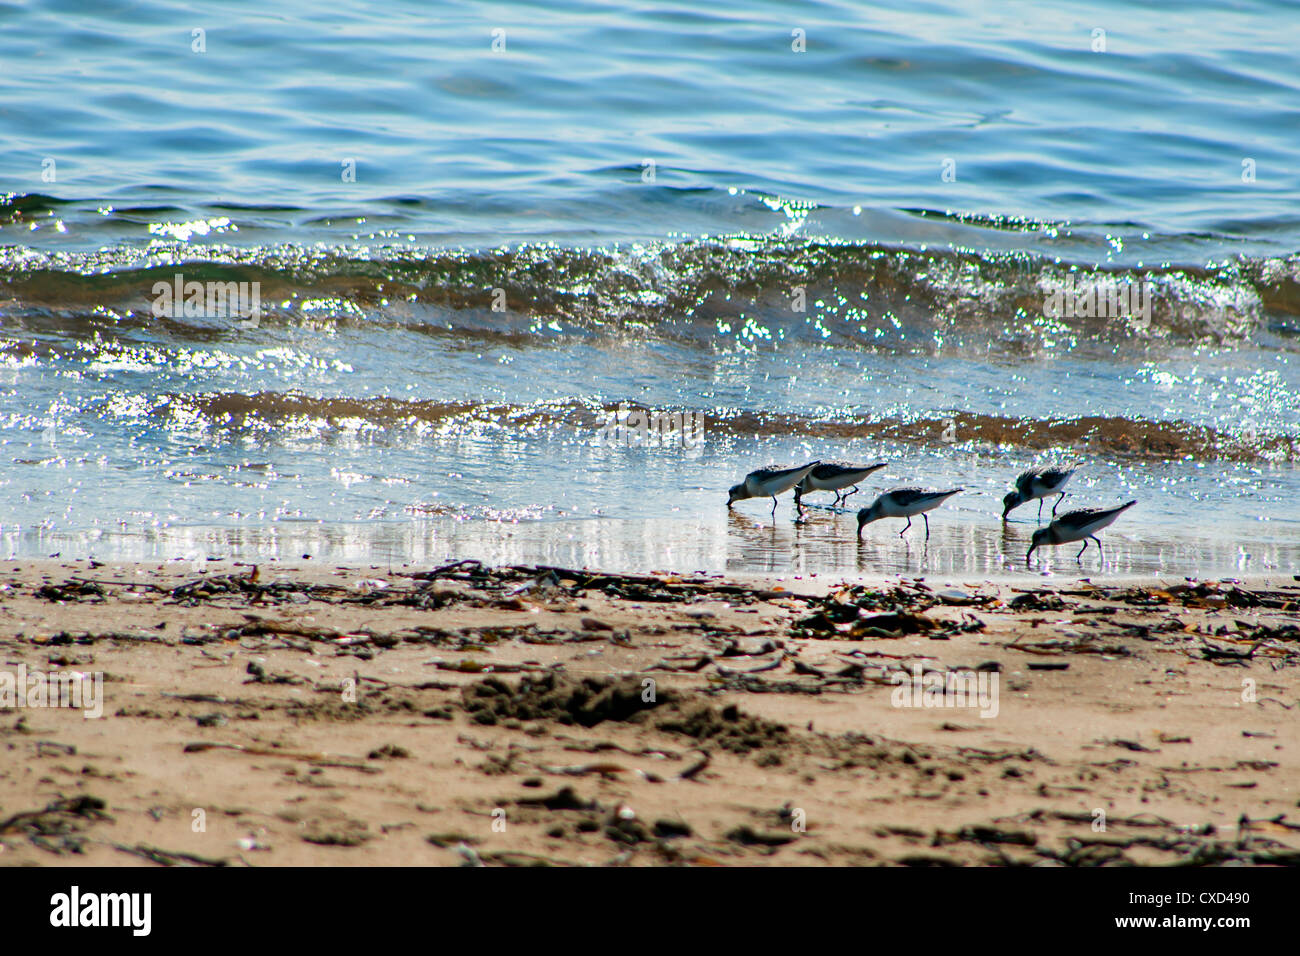 Vue sur les oiseaux de mer - sandpiper - à la recherche de nourriture durant la marée basse dans une mer japonais Vladivostok Russie Banque D'Images